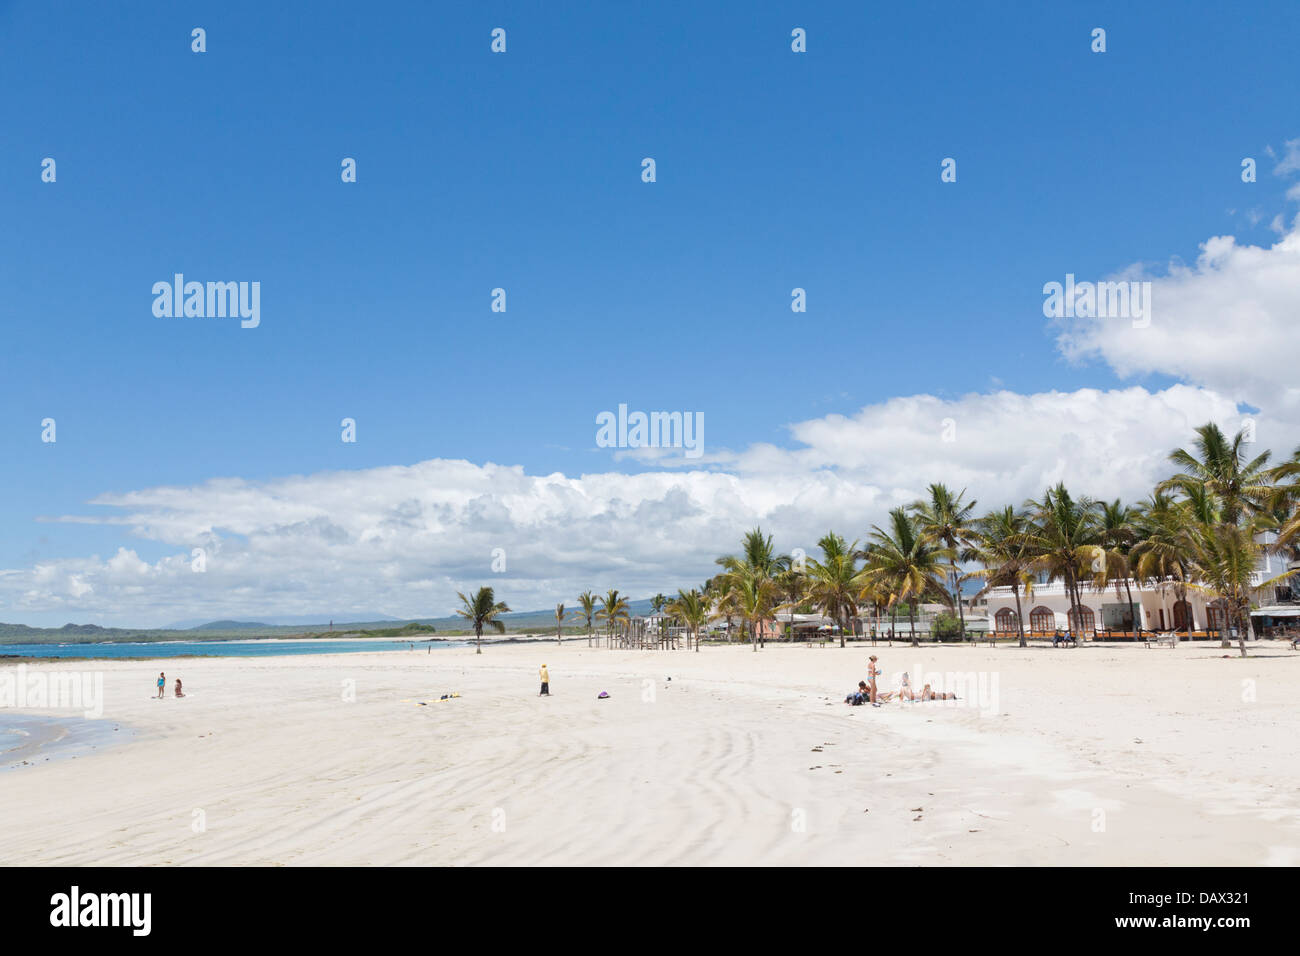 Beach, Puerto Villamil, Isabela Island, Galapagos Islands, Ecuador Stock Photo